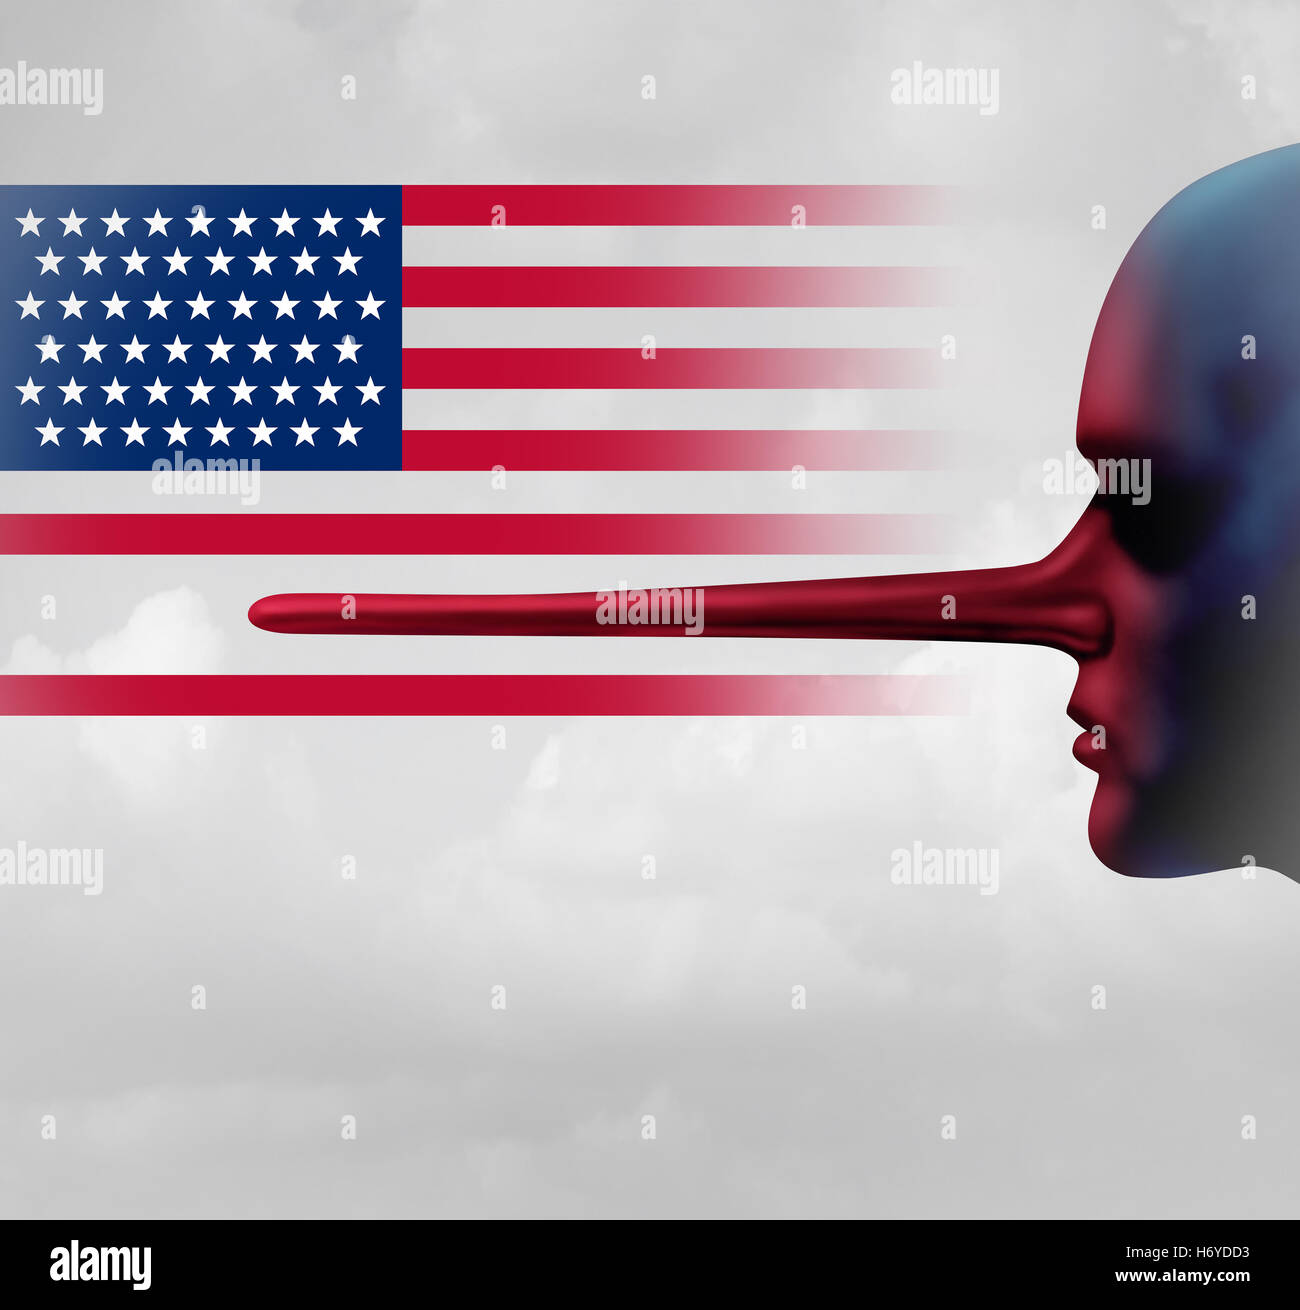 American trust nozione come un simbolo per la legalità e onestà come una questione sociale negli Stati Uniti in un 3D illustrazione dello stile. Foto Stock